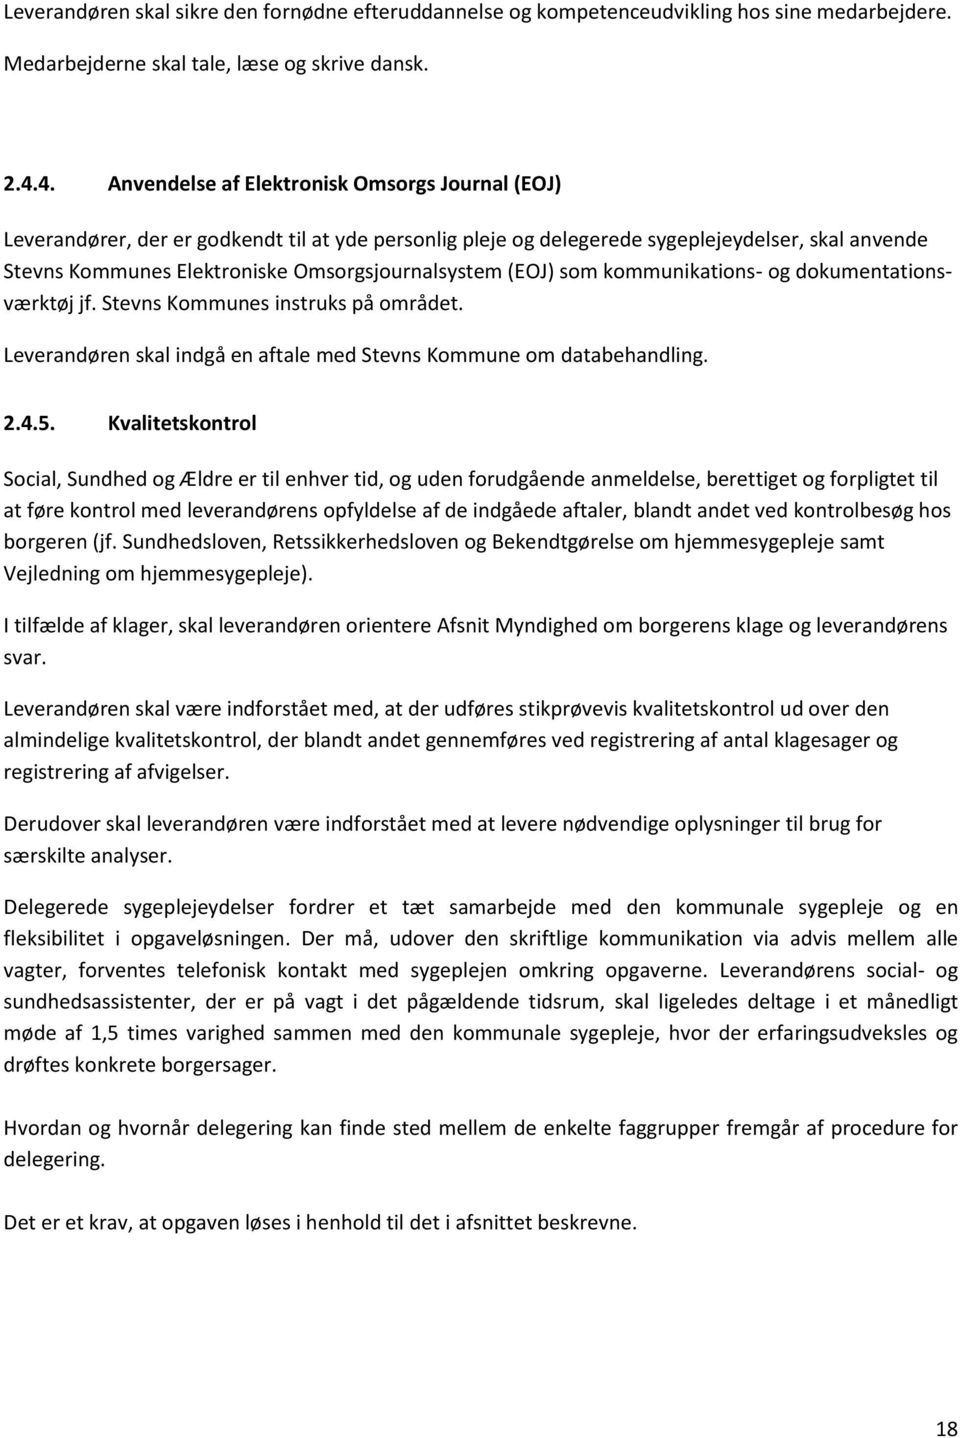 Omsorgsjournalsystem (EOJ) som kommunikations- og dokumentationsværktøj jf. Stevns Kommunes instruks på området. Leverandøren skal indgå en aftale med Stevns Kommune om databehandling. 2.4.5.